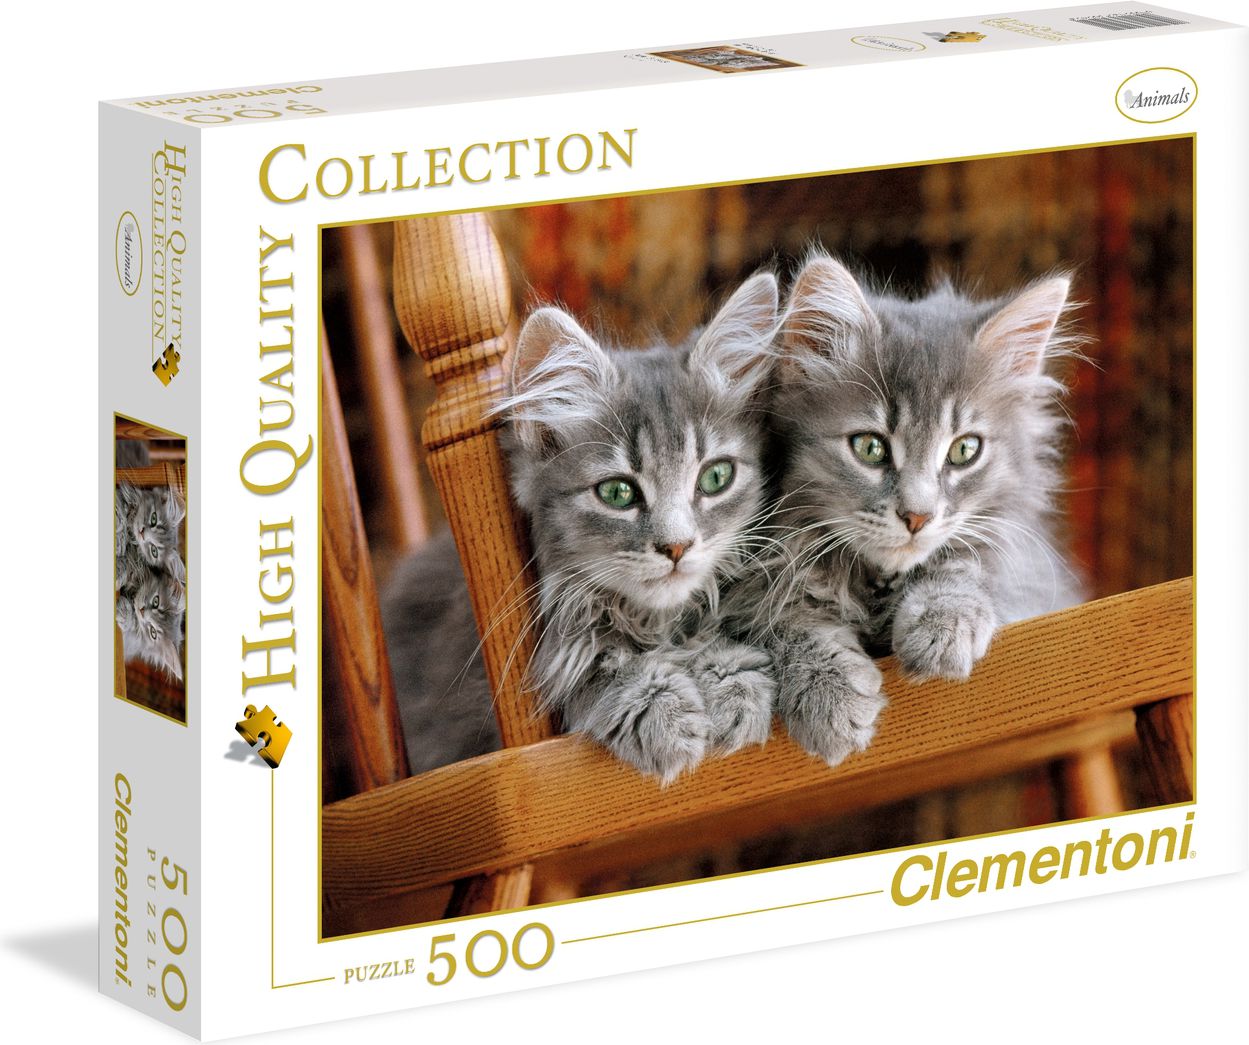 Clementoni 500 pieces Kittens puzle, puzzle